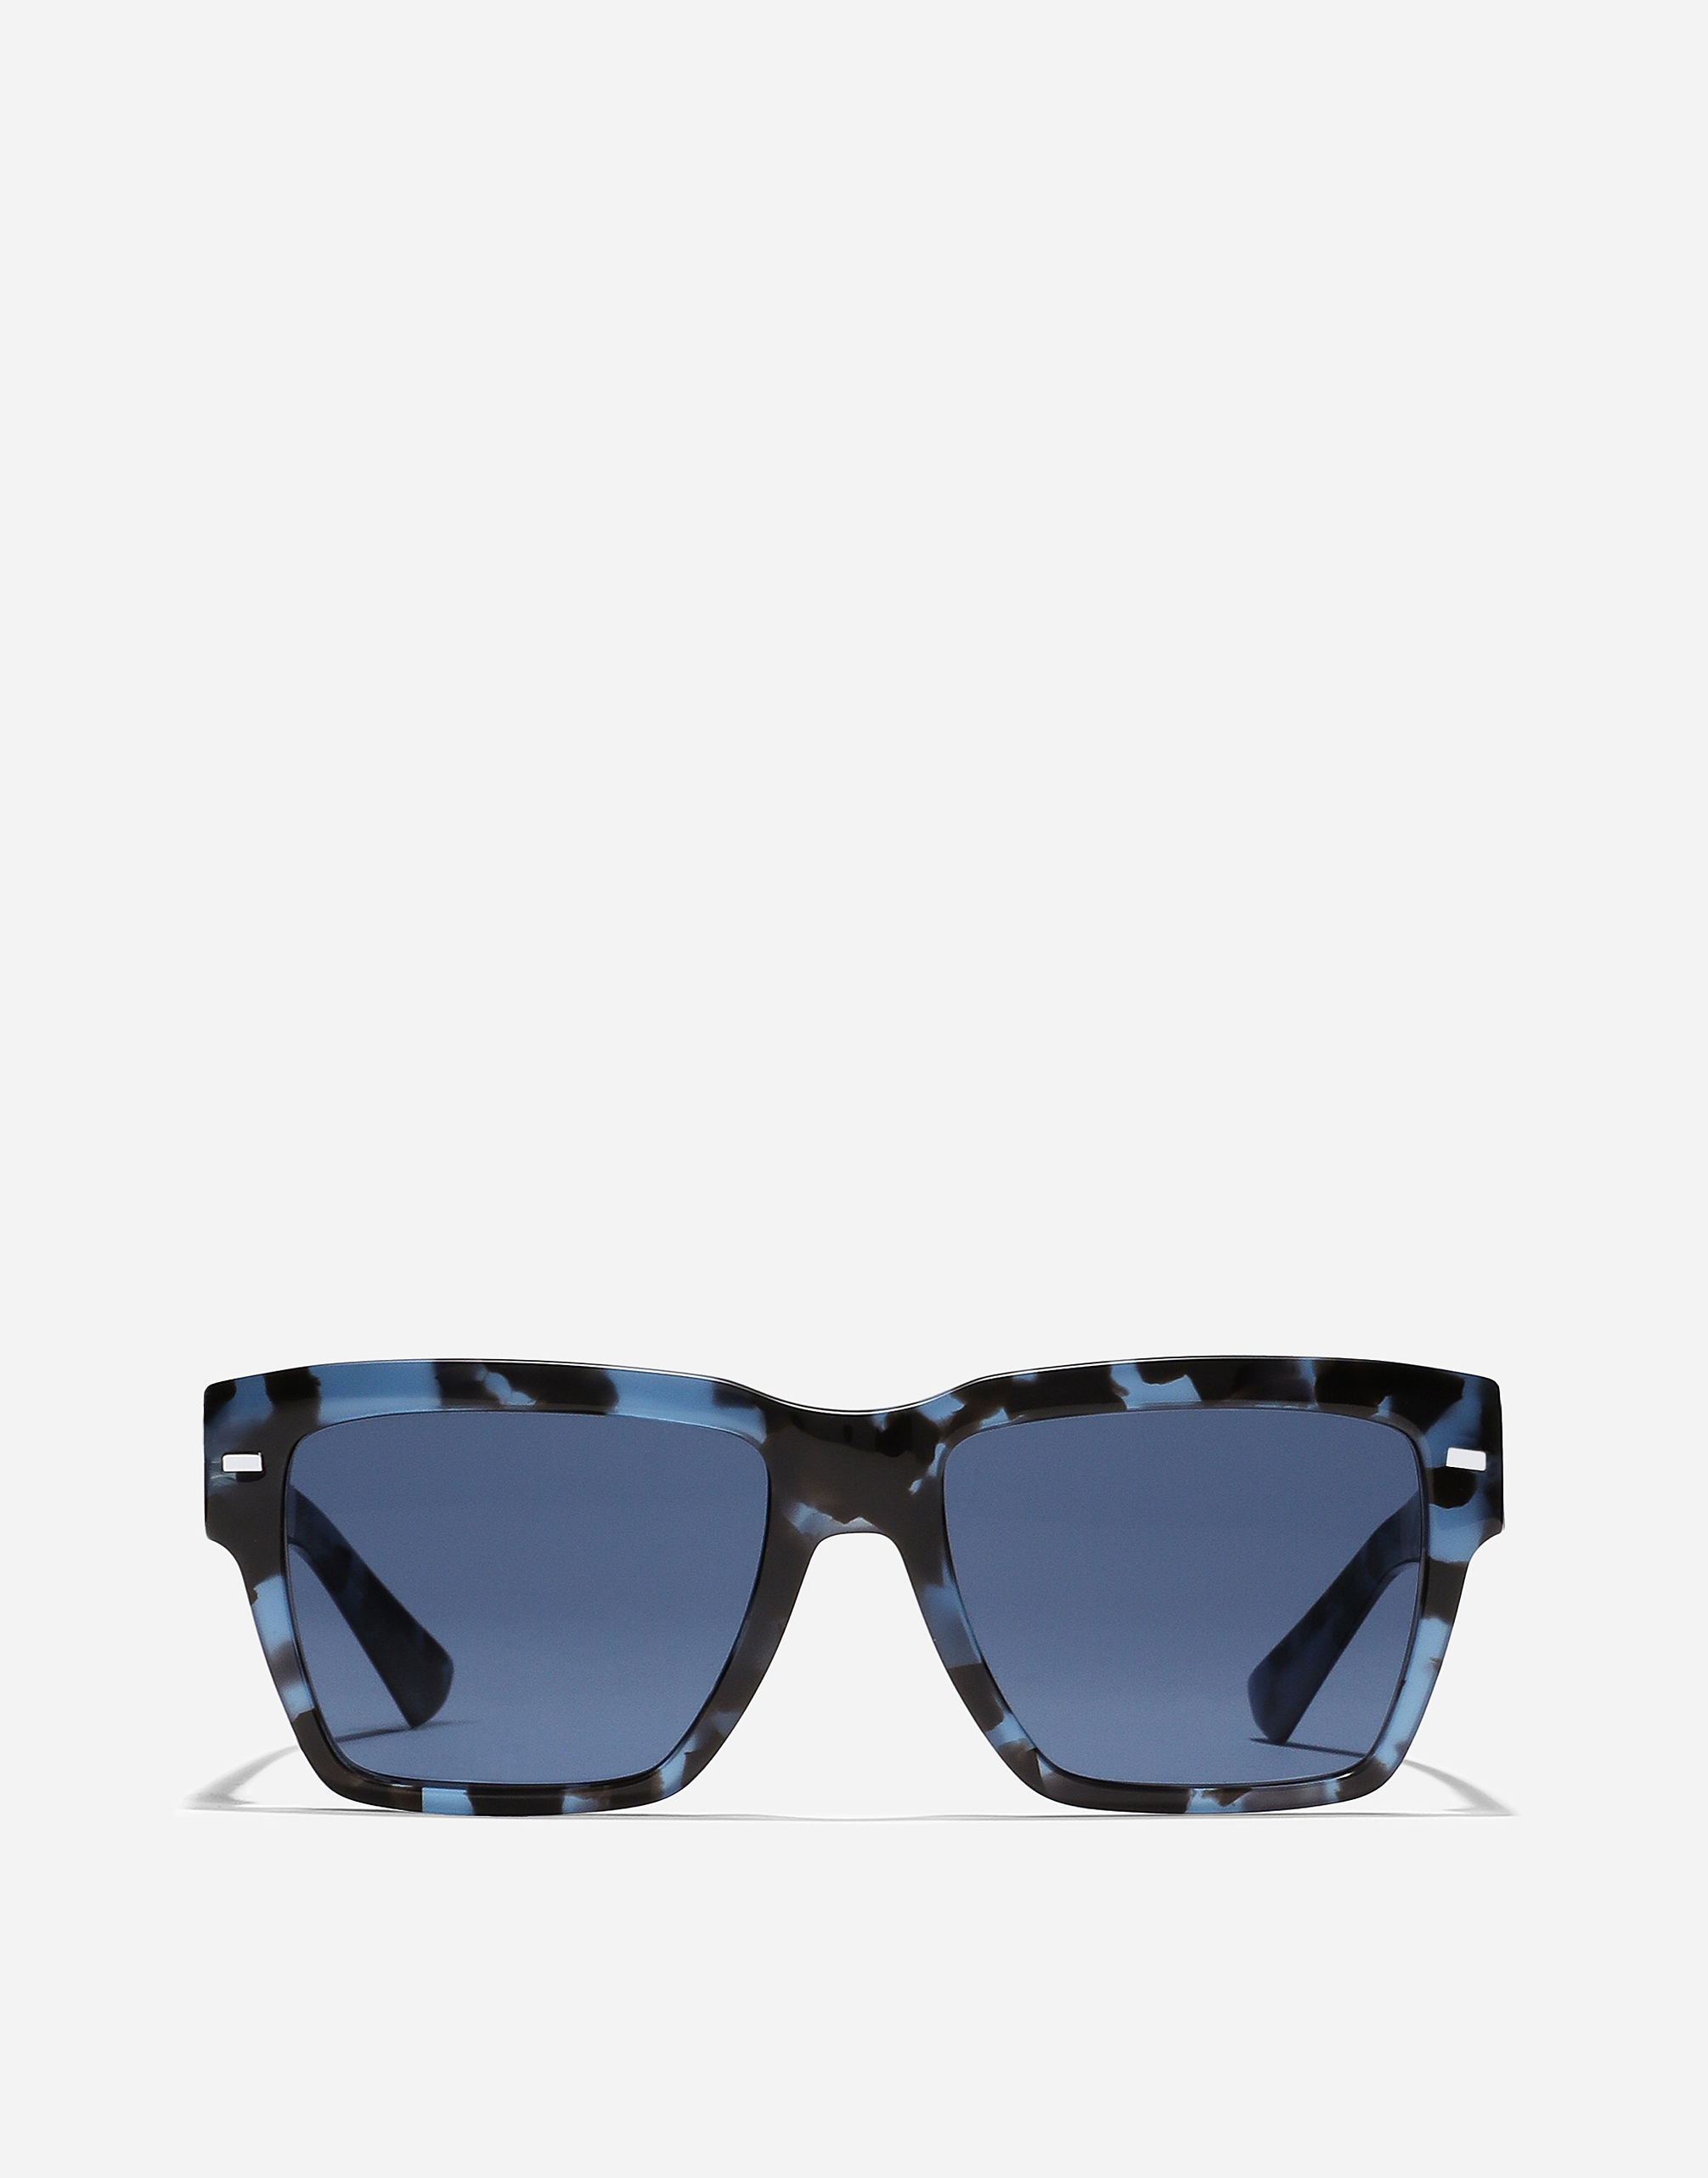 Dolce & Gabbana Occhiale Sole-202401 In Blue